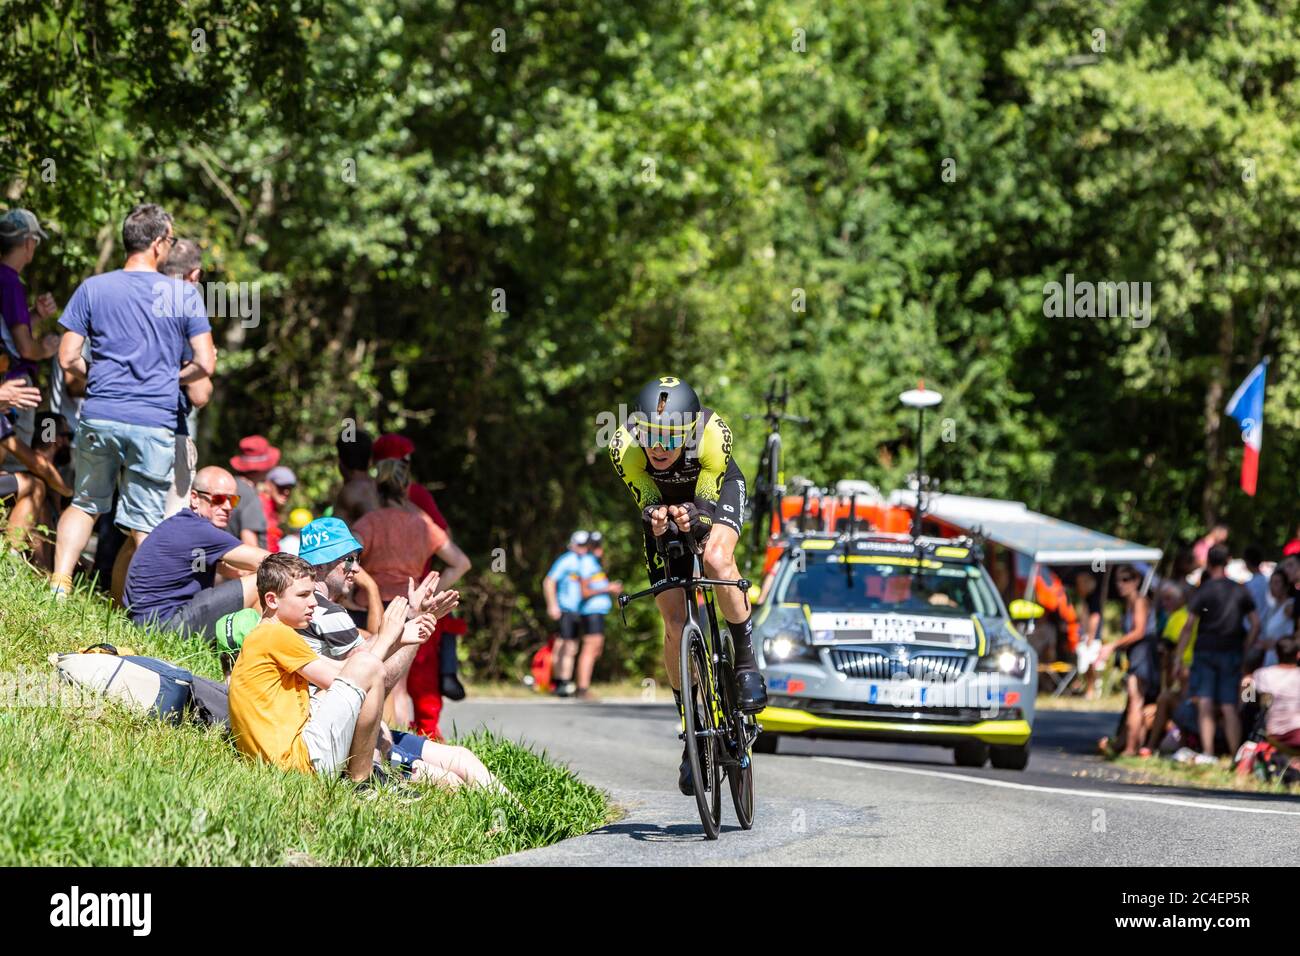 Bossarros, Francia - 19 luglio 2019: Il ciclista australiano Jack Haig del Team Mitchelton-Scott che cavalca durante la tappa 13, prova individuale, di le Tour Foto Stock